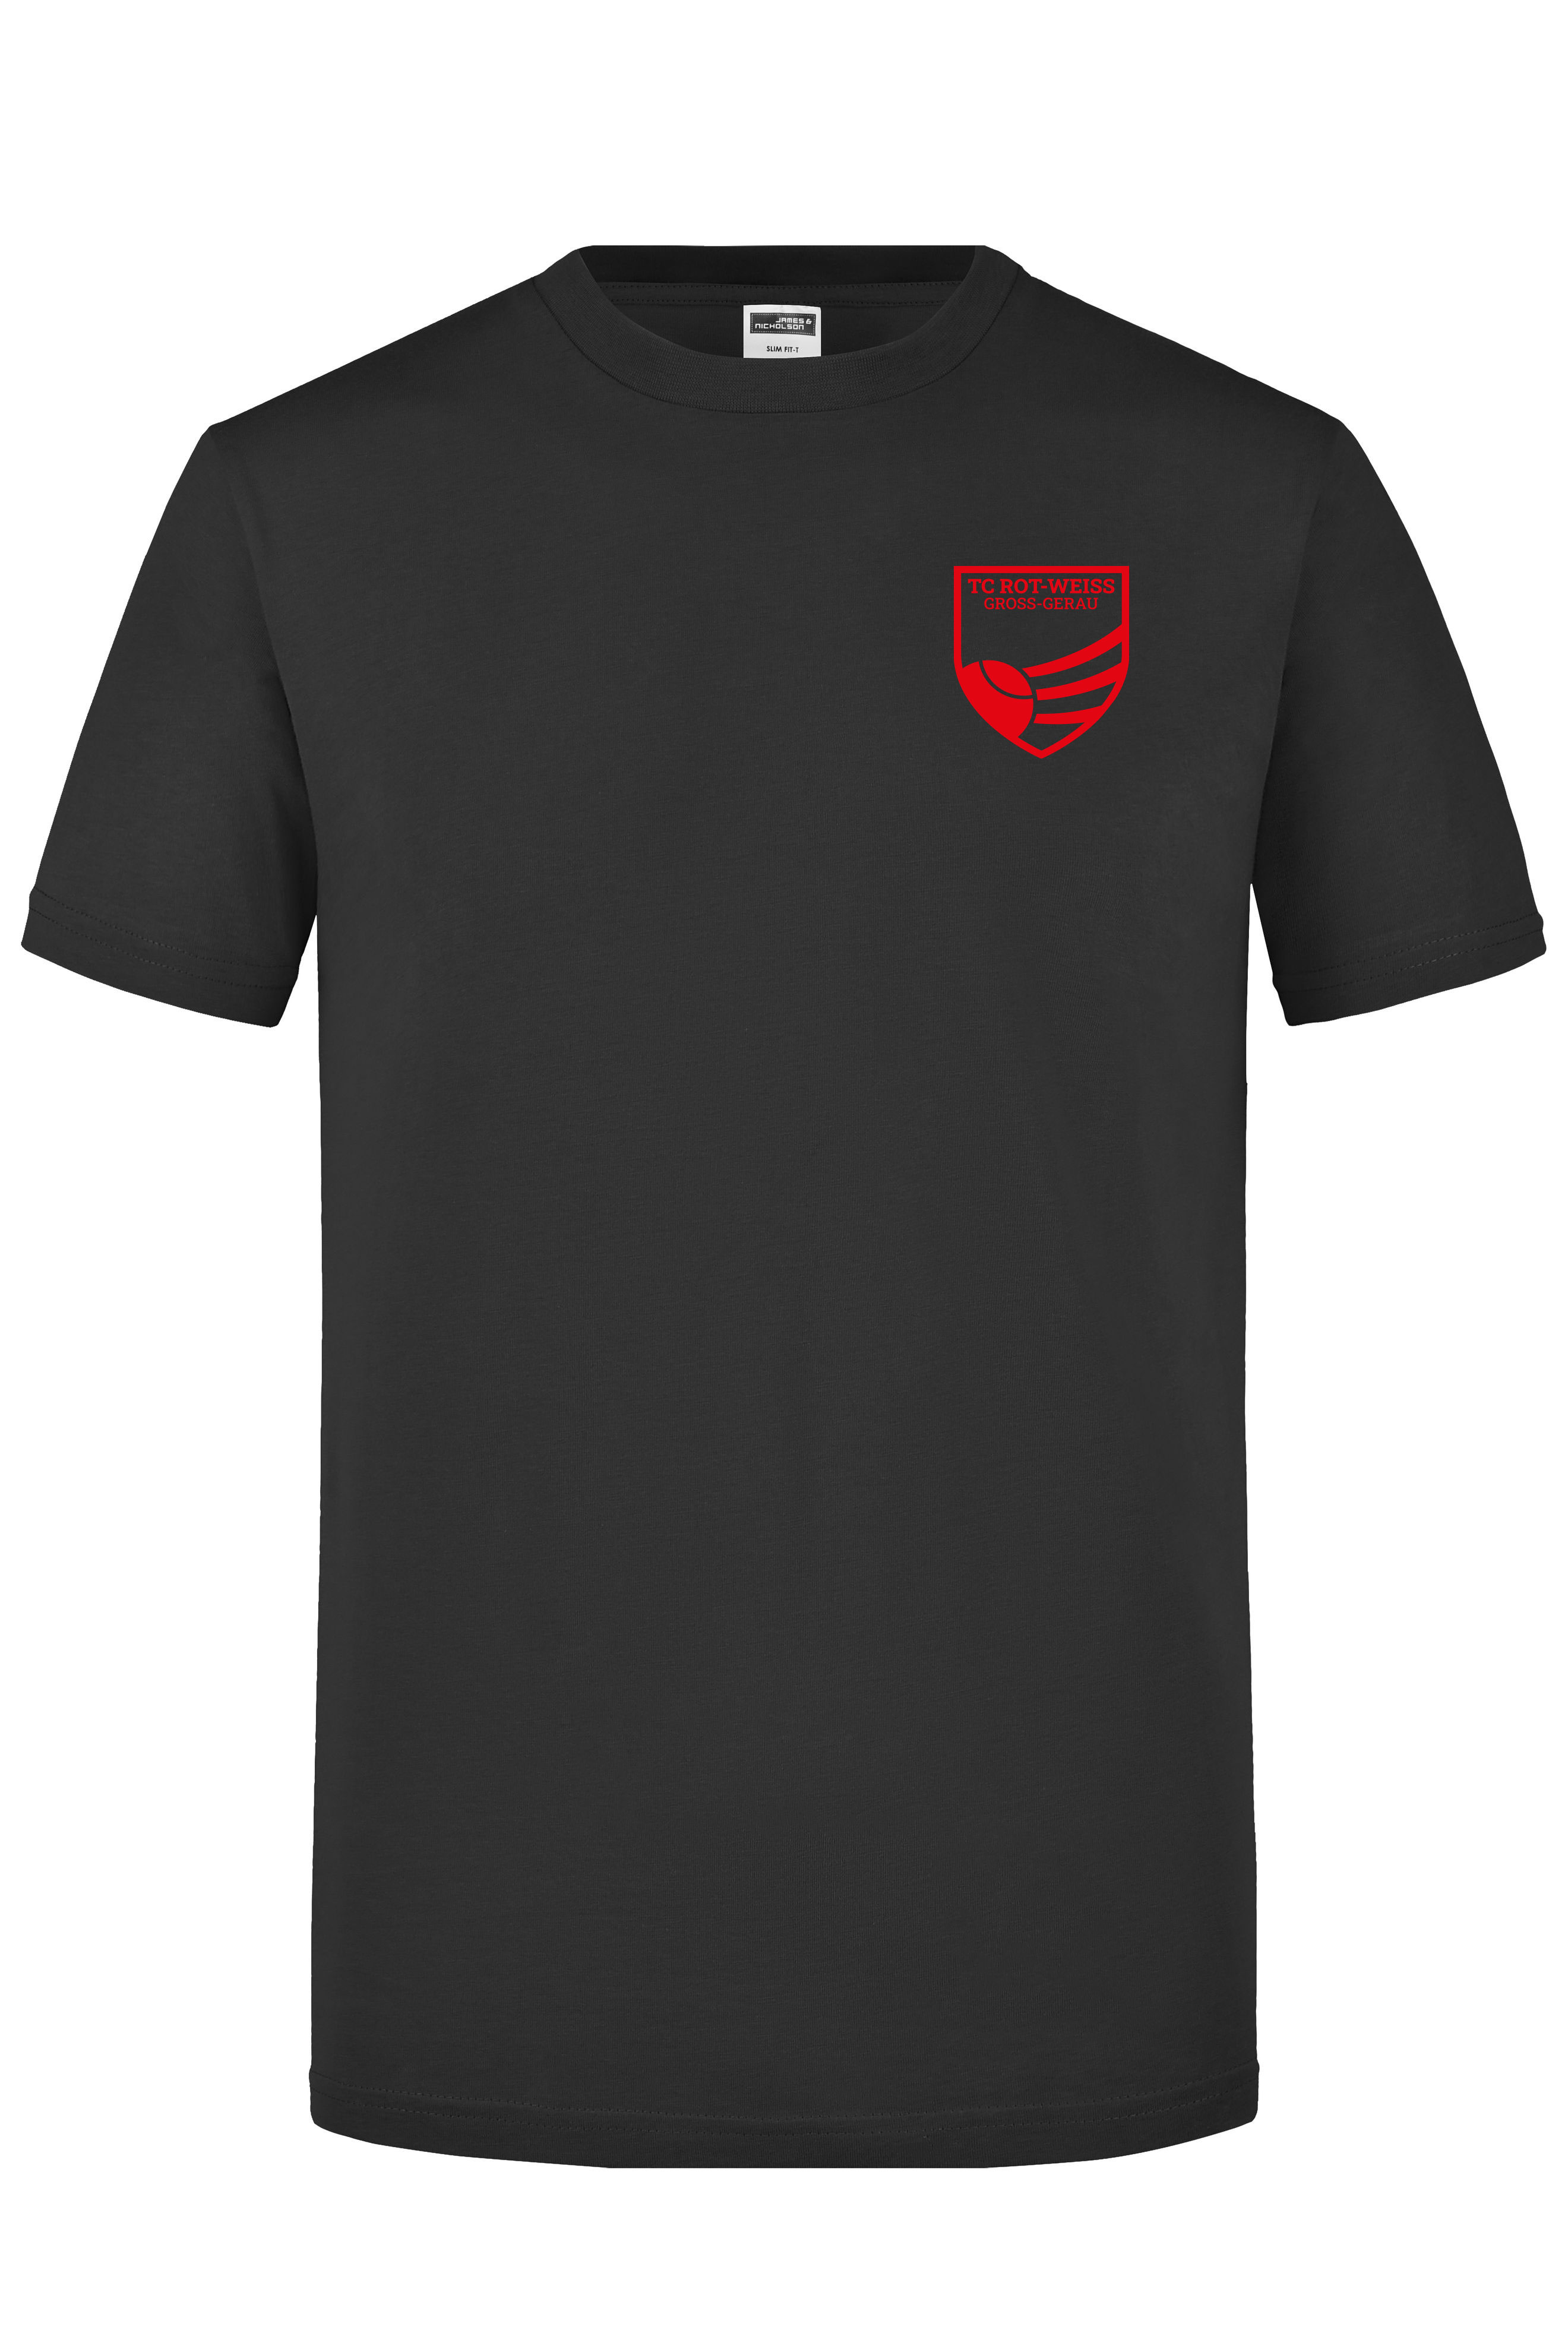 TC Rot-Weiss - Vorteil GG - T-Shirt schwarz